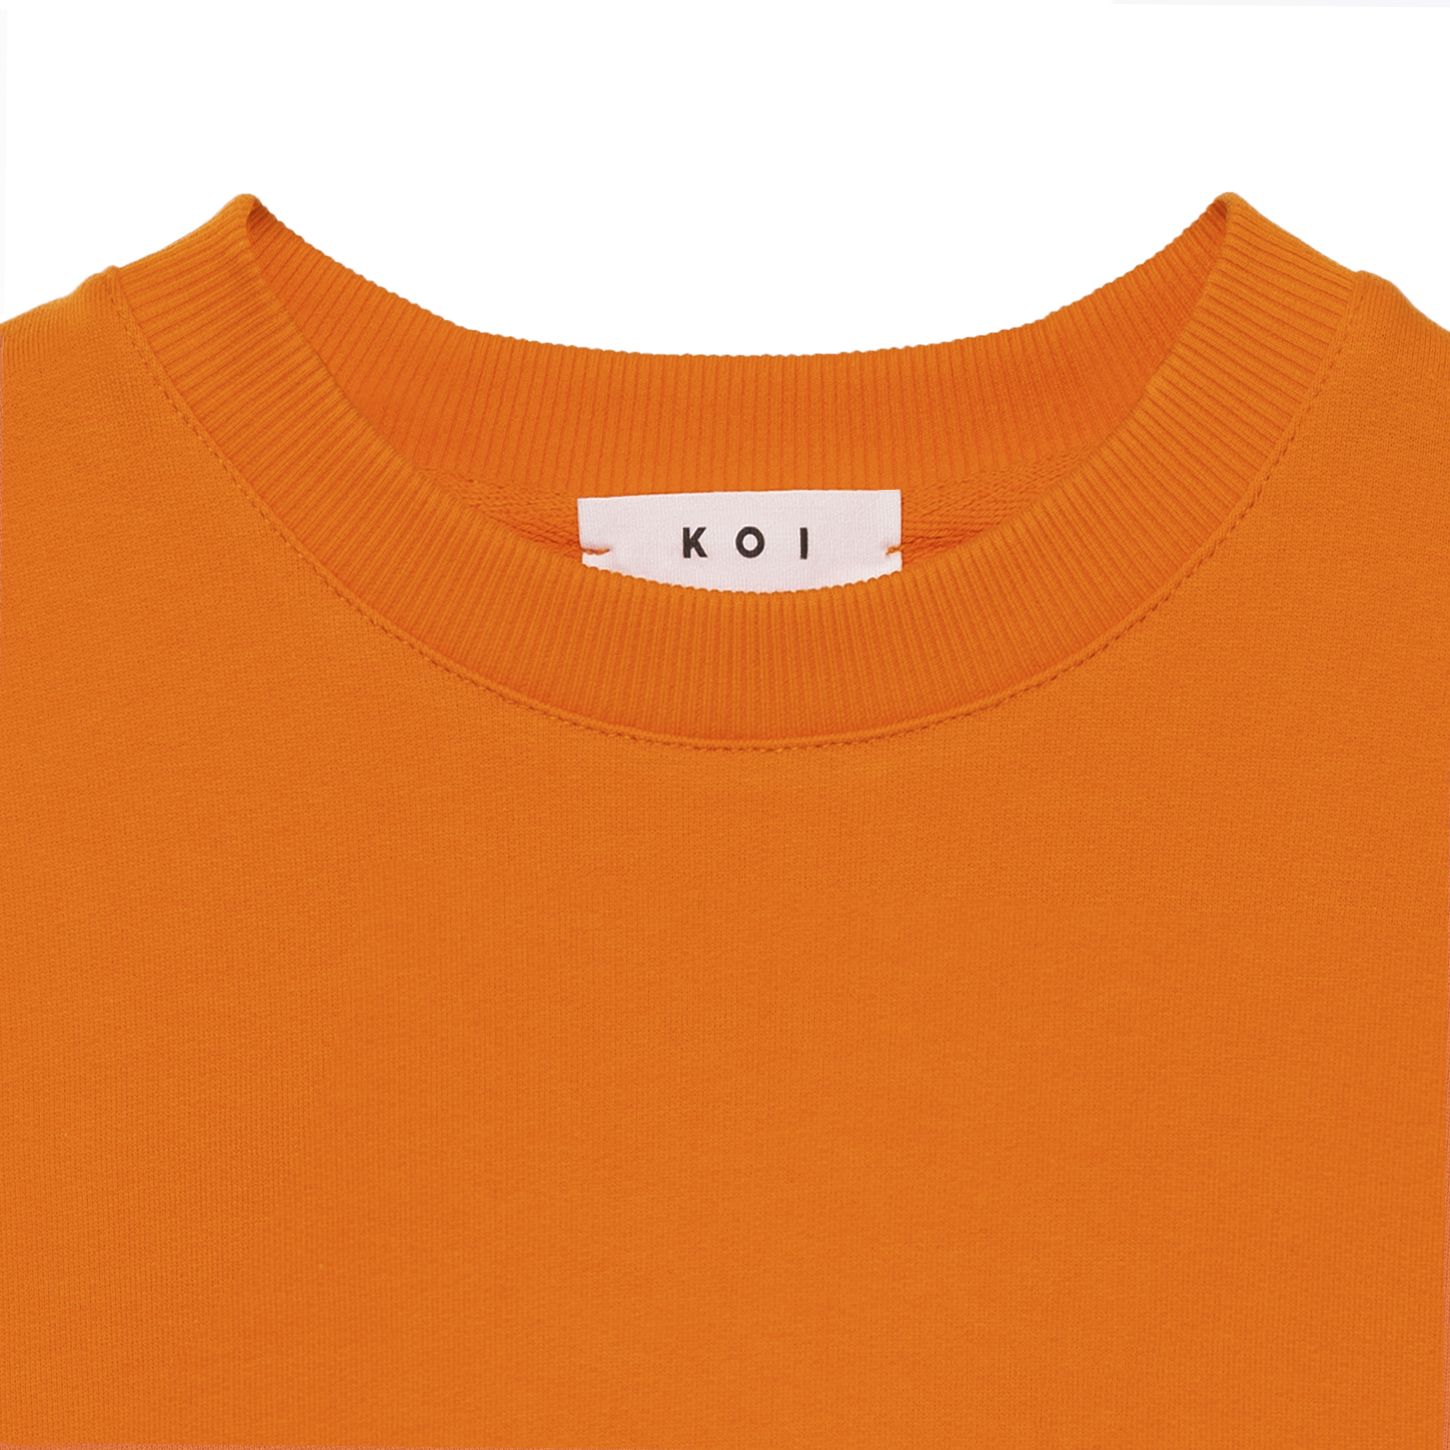 سویشرت مردانه کوی مدل 402 رنگ نارنجی -  - 3